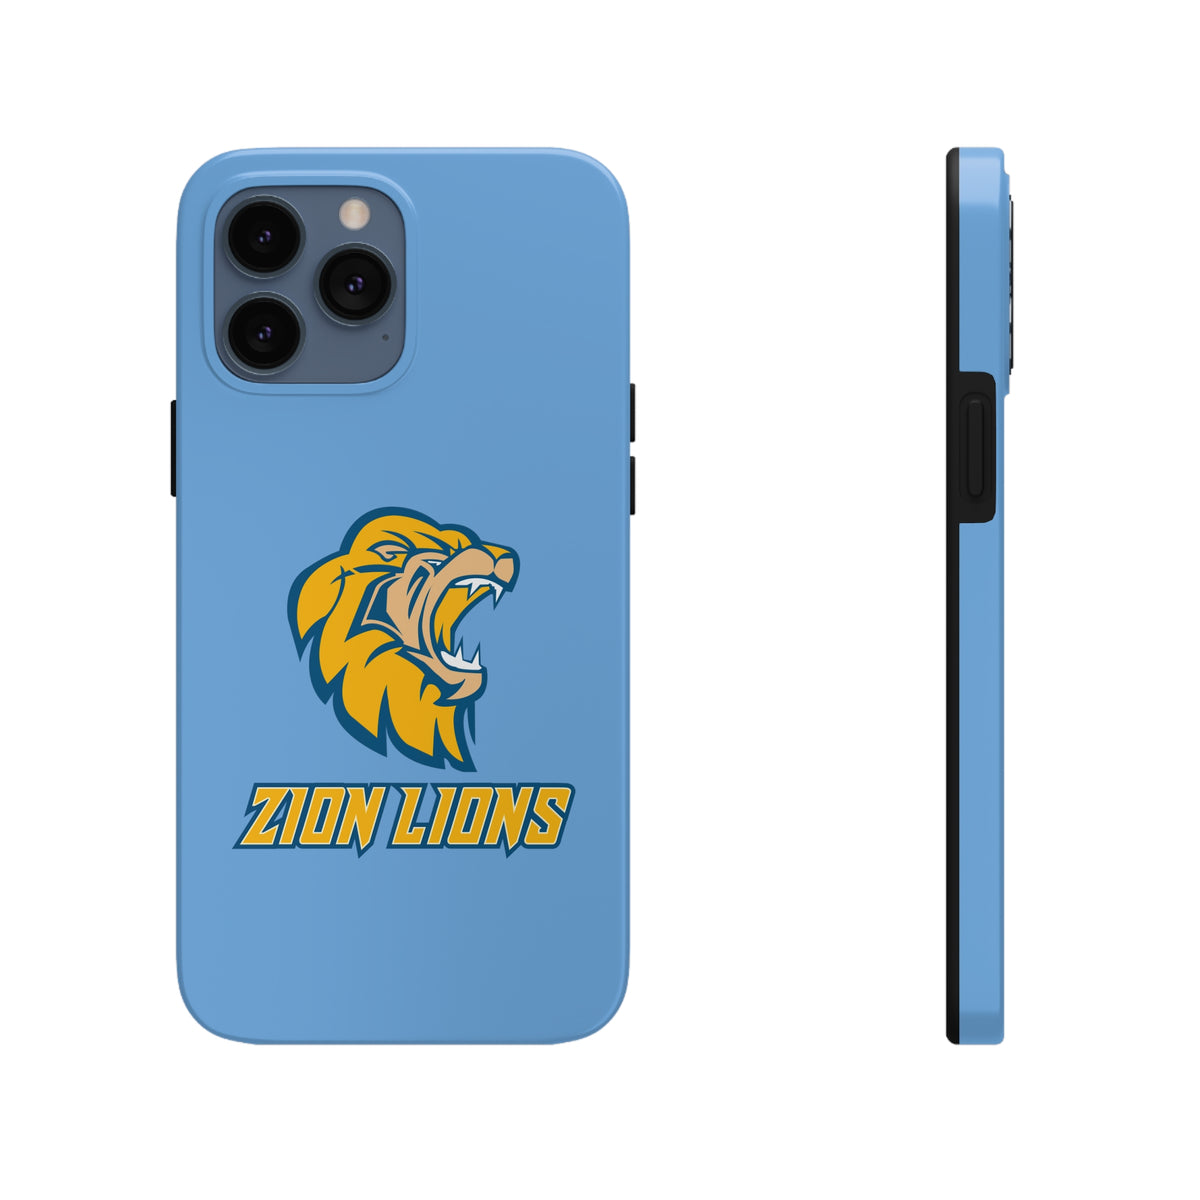 Zion Lions Tough Phone Cases